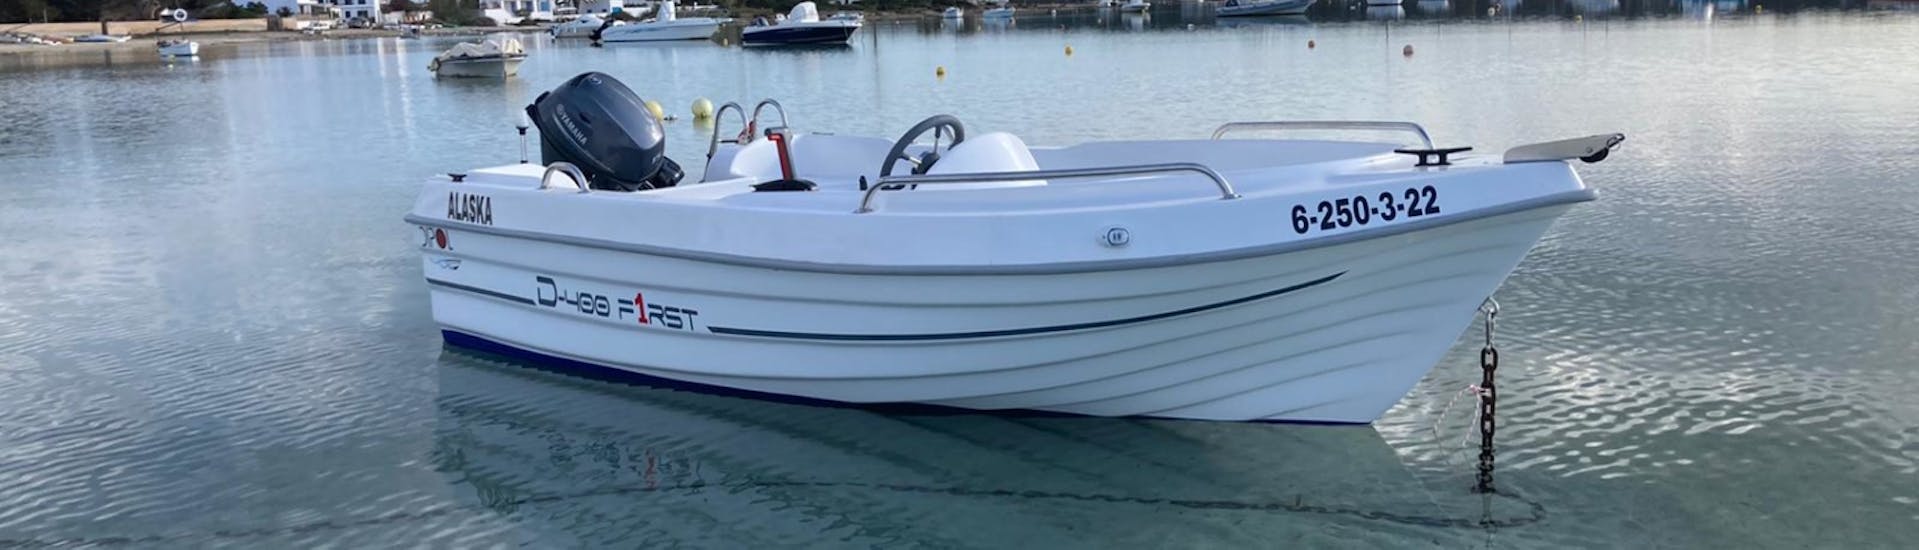 Een boot te huur zonder vaarbewijs in Formentera voor maximaal 4 personen met Barco Rent Formentera.